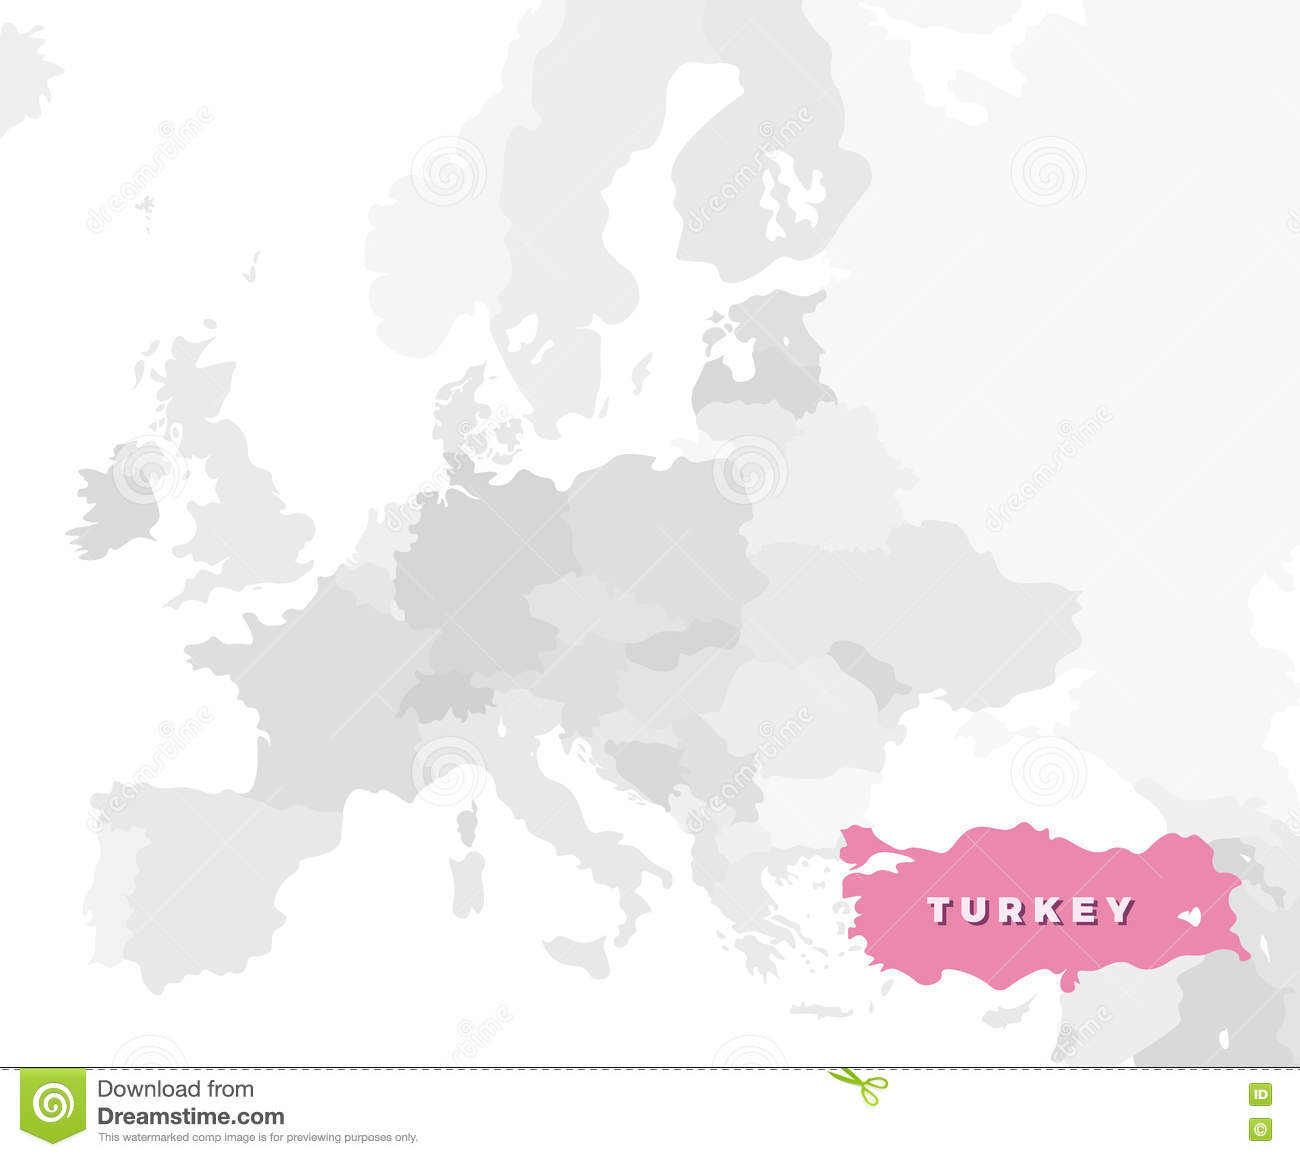 Carte De Site De La Turquie Illustration De Vecteur pour Carte Europe Sans Nom Des Pays